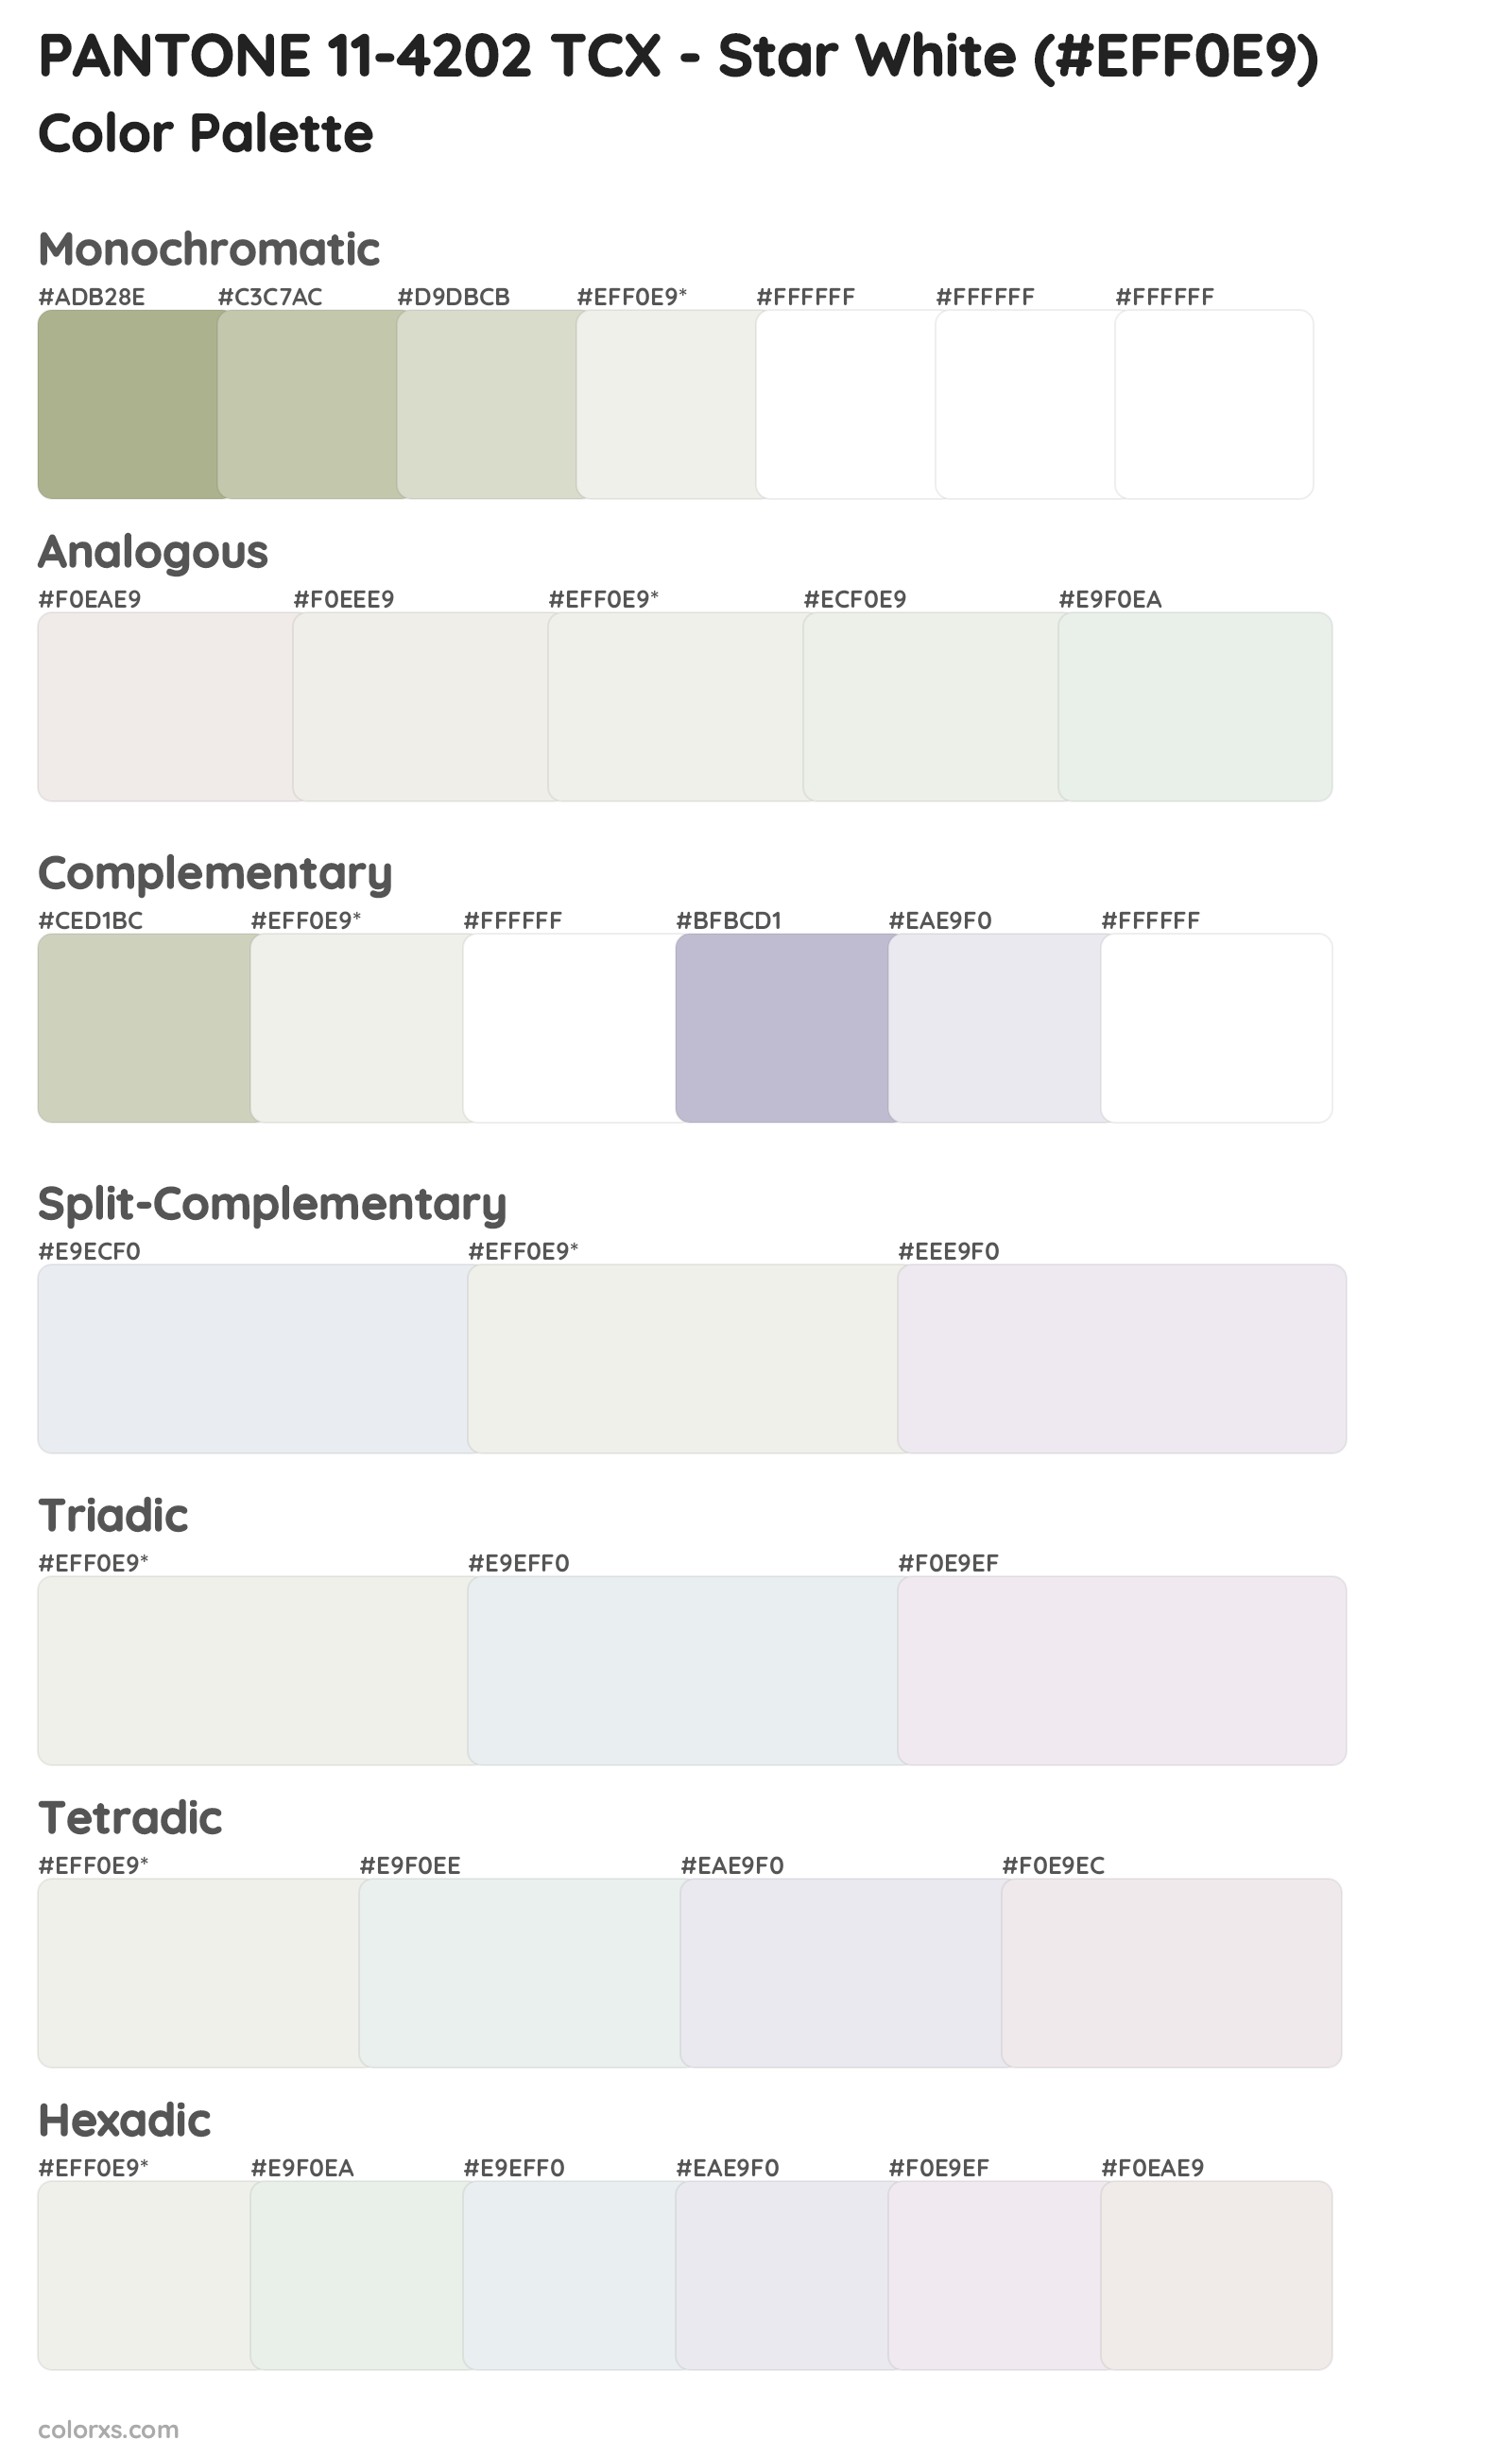 PANTONE 11-4202 TCX - Star White Color Scheme Palettes